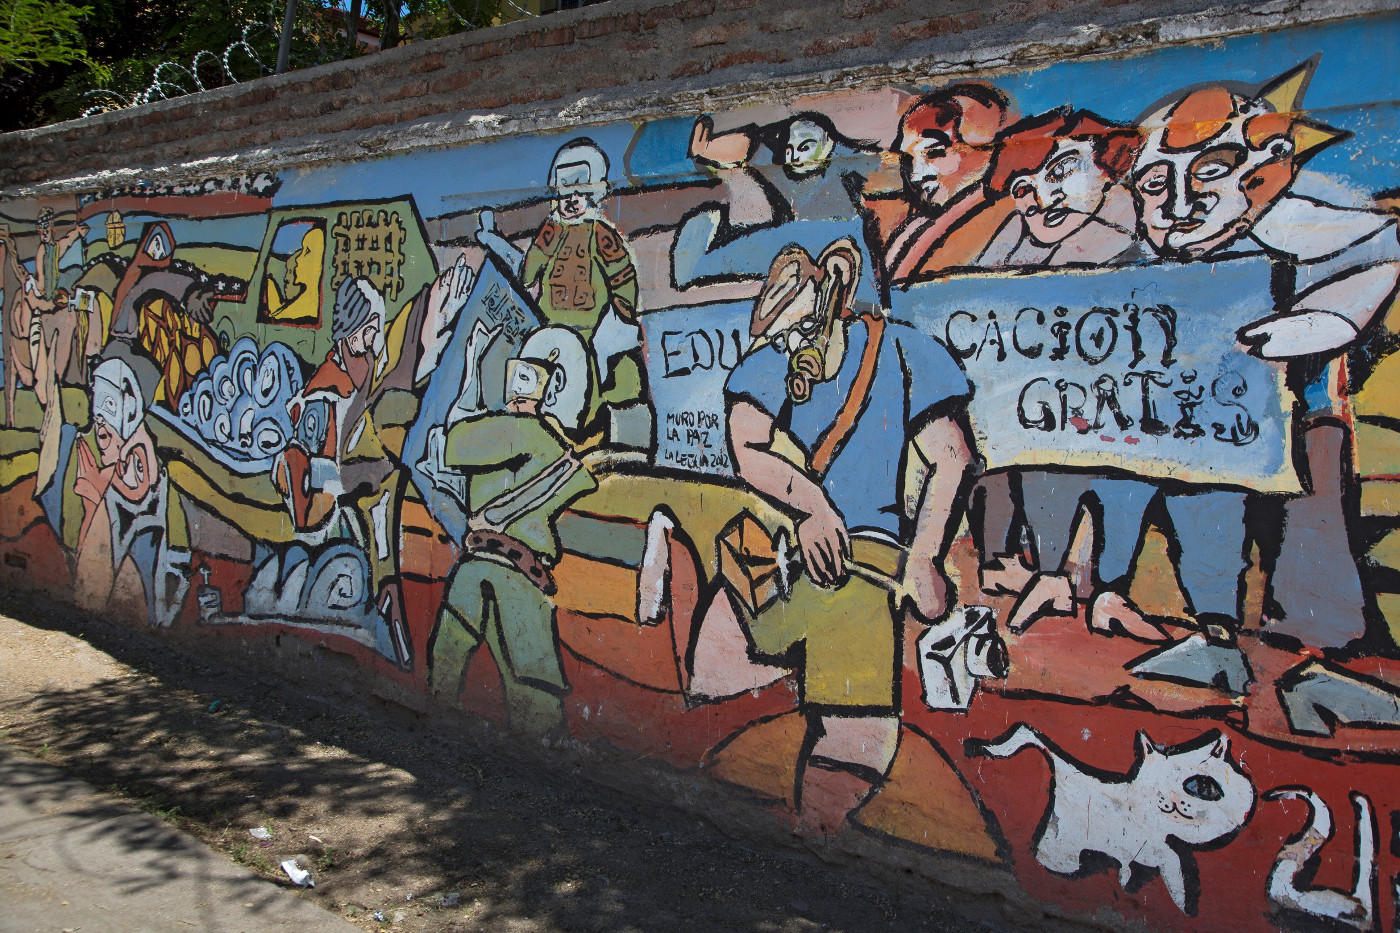 Das Wandbild in der Hauptstadt Santiago de Chile zeigt die Demonstrationen für kostenfreie Bildung im Jahr 2013 - ein Thema, dem sich auch die Verfassunggebende Versammlung widmen soll. Foto: Adveniat/Jürgen Escher